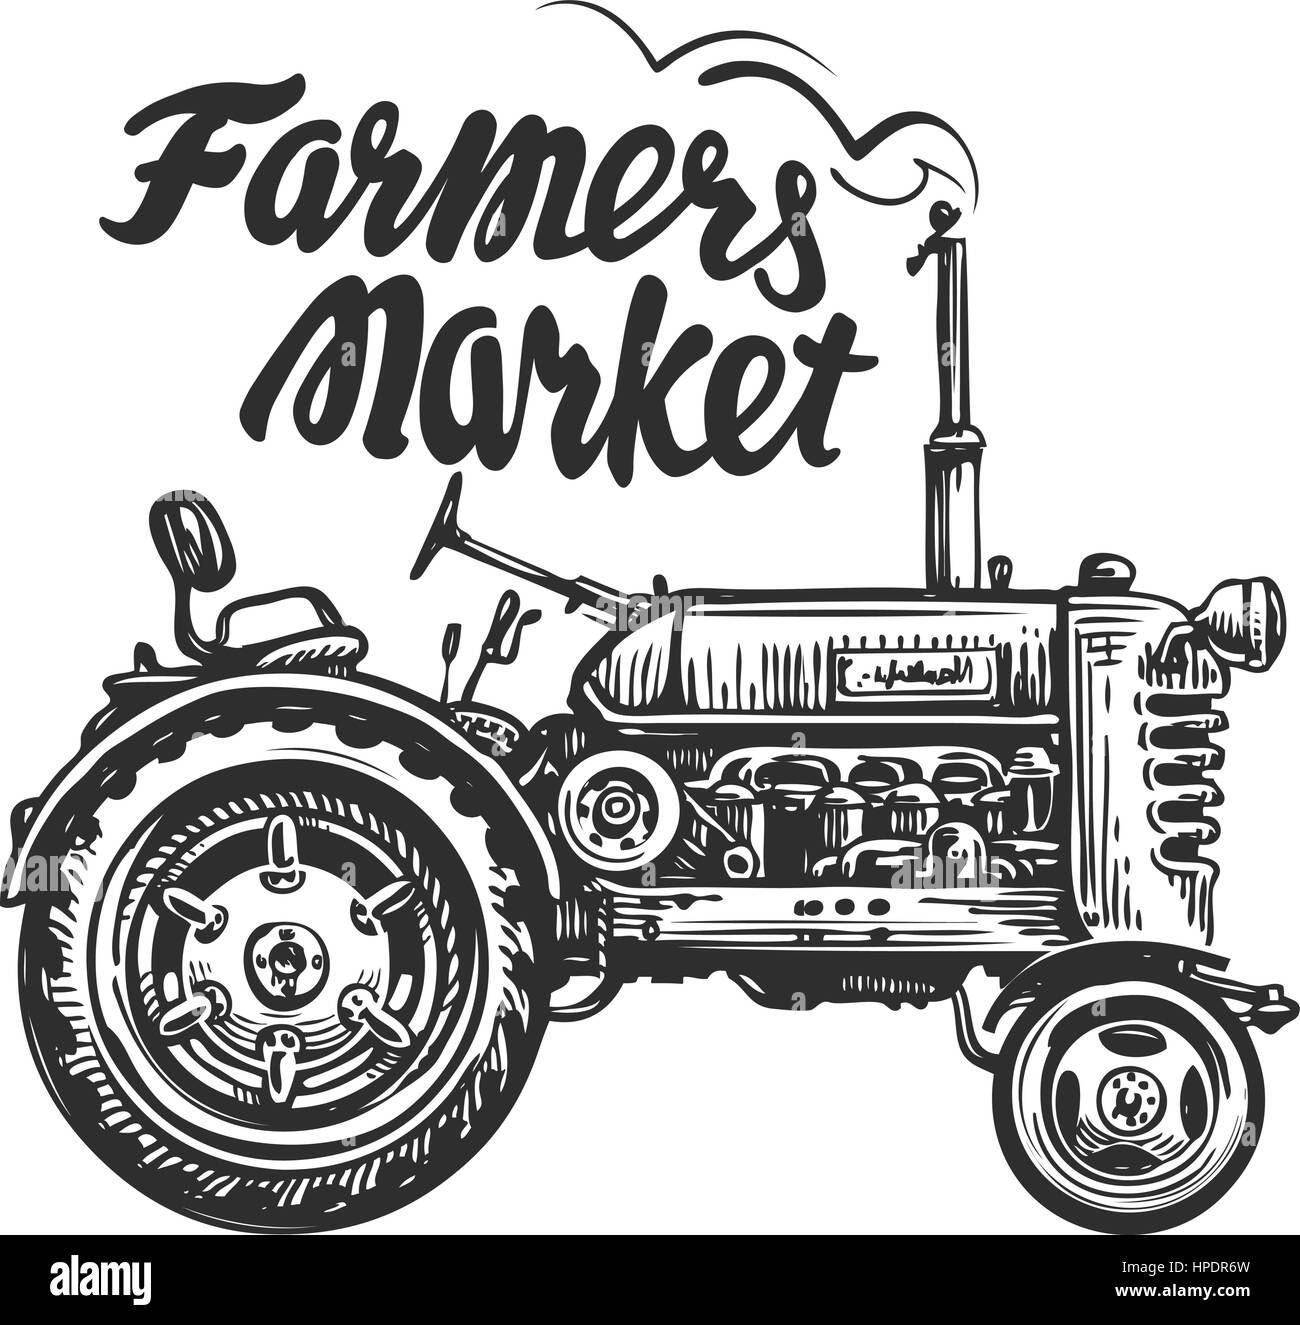 Vintage trattore agricolo, schizzo. Mercato degli Agricoltori, scritte. Disegnato a mano illustrazione vettoriale Illustrazione Vettoriale